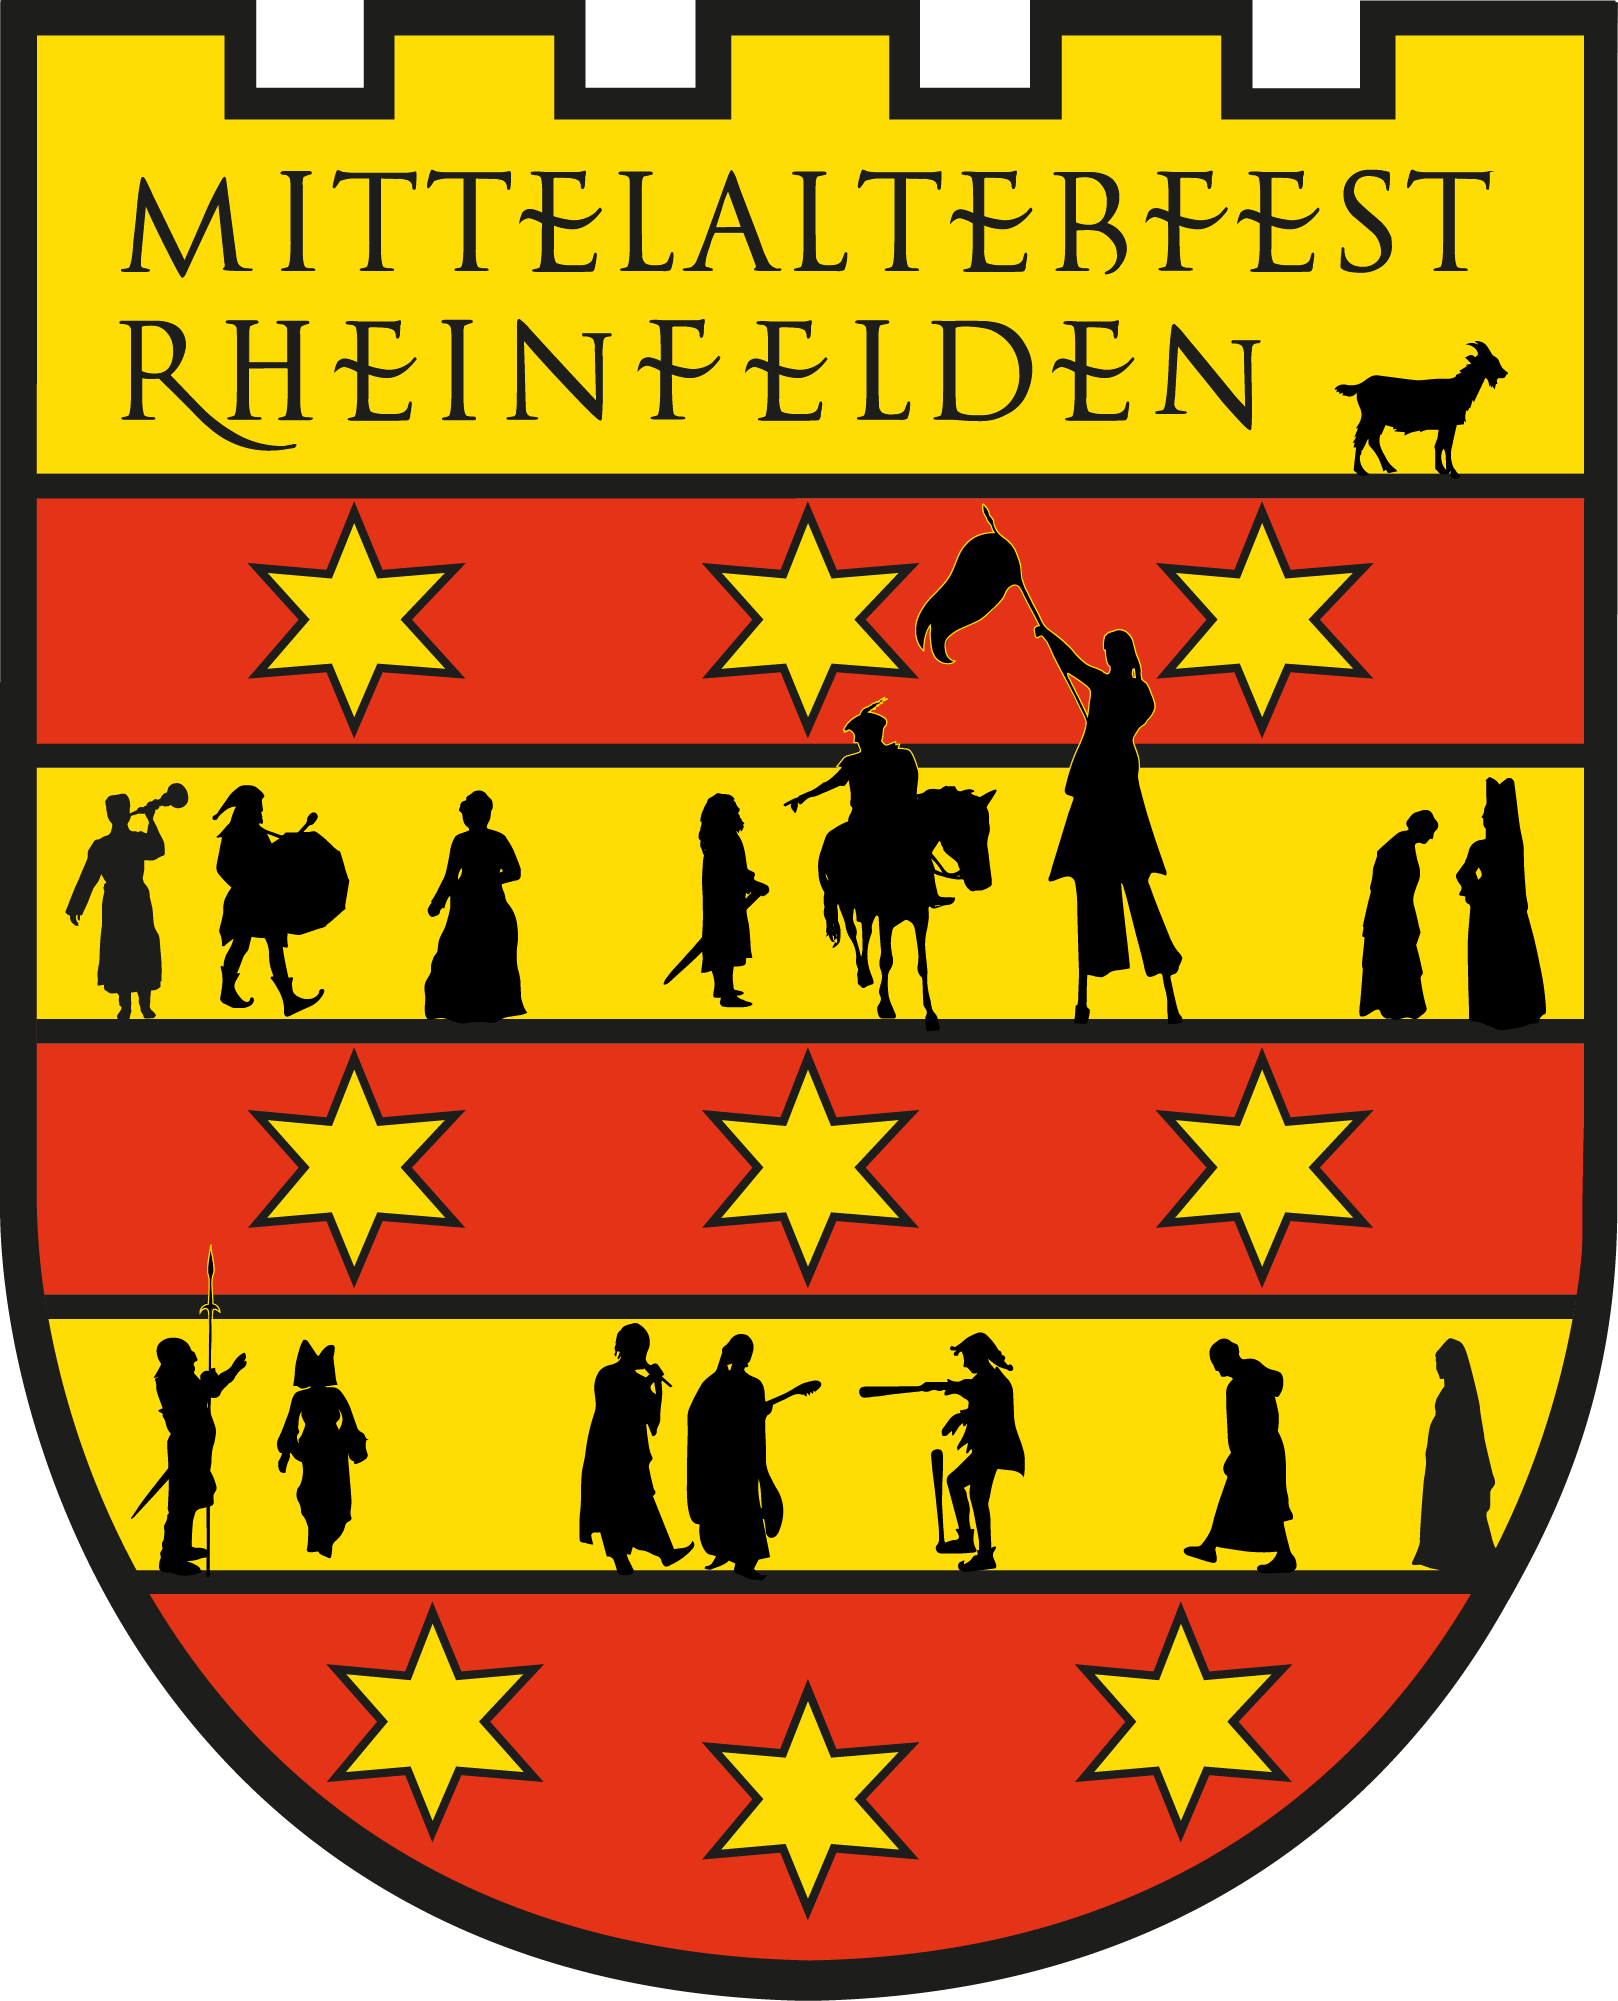 Mittelalter- und Fantasy-Fest Rheinfelden